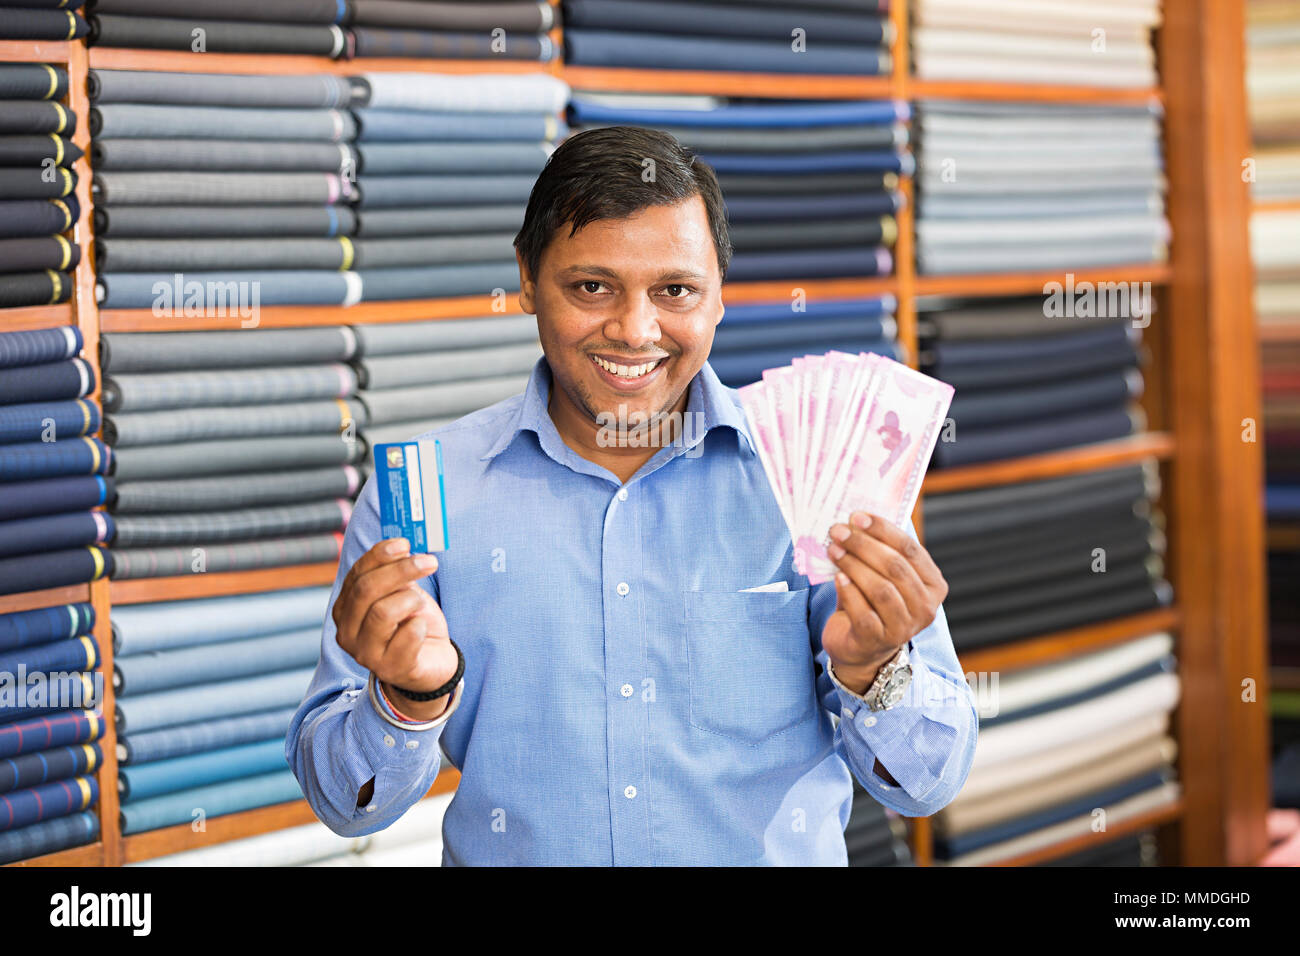 Un commerçant de vêtements montrant roupies avec Debit-Card In clothes store Banque D'Images